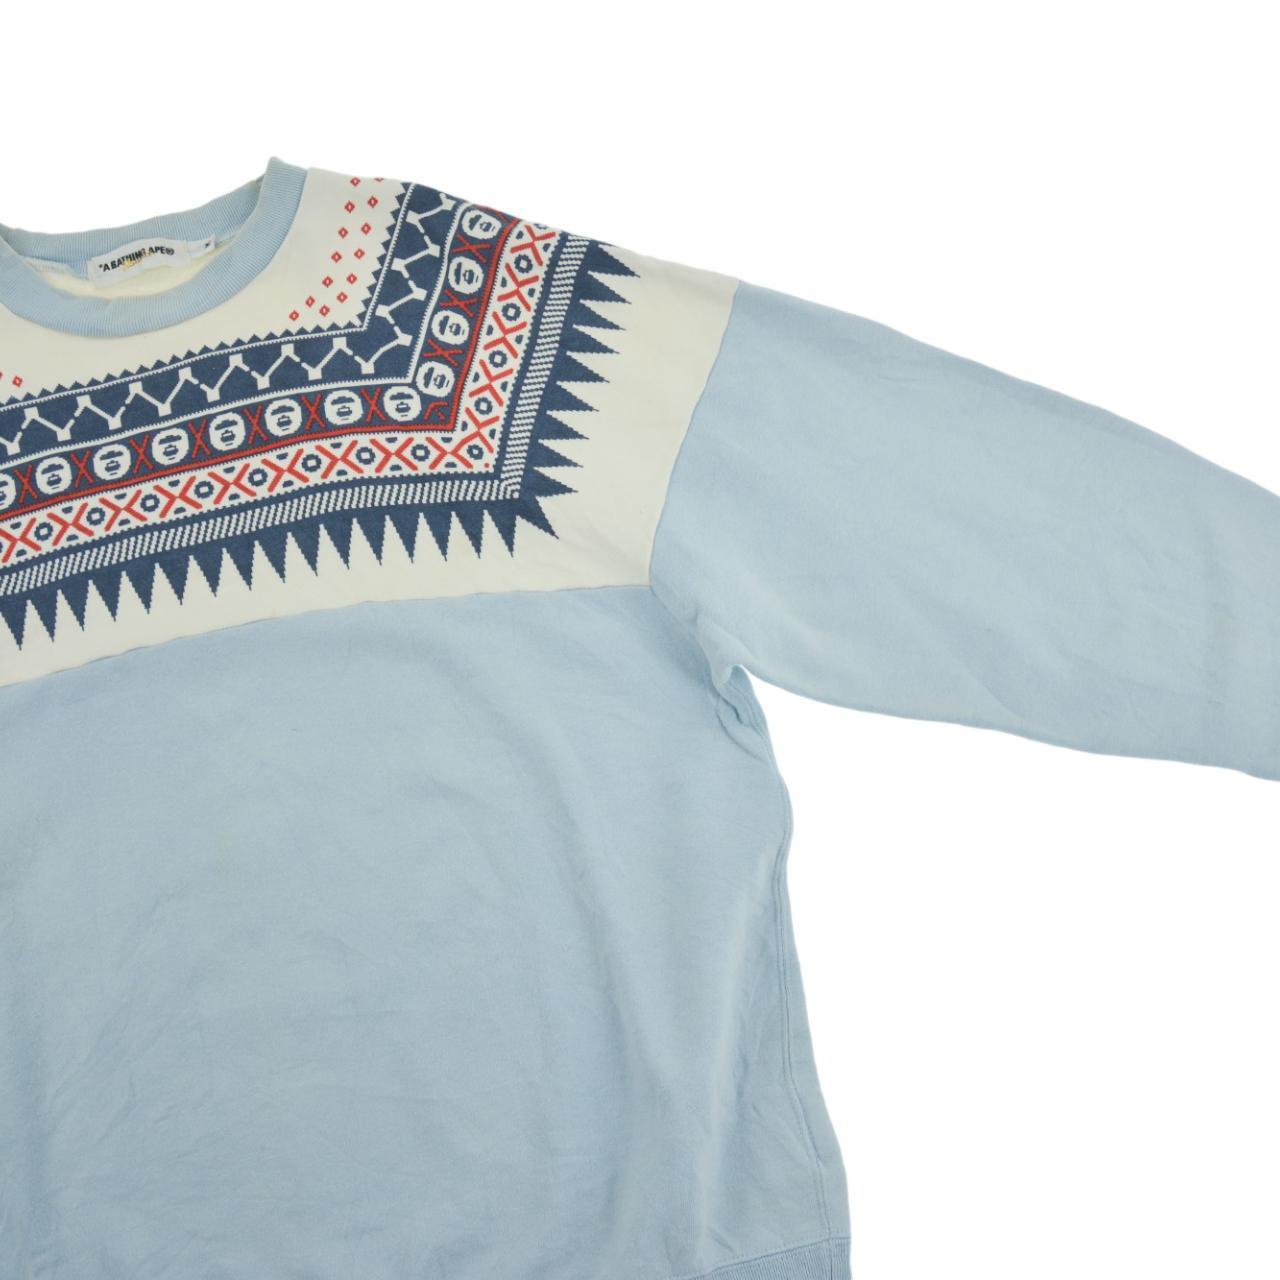 Vintage BAPE Sweatshirt Size S - Known Source